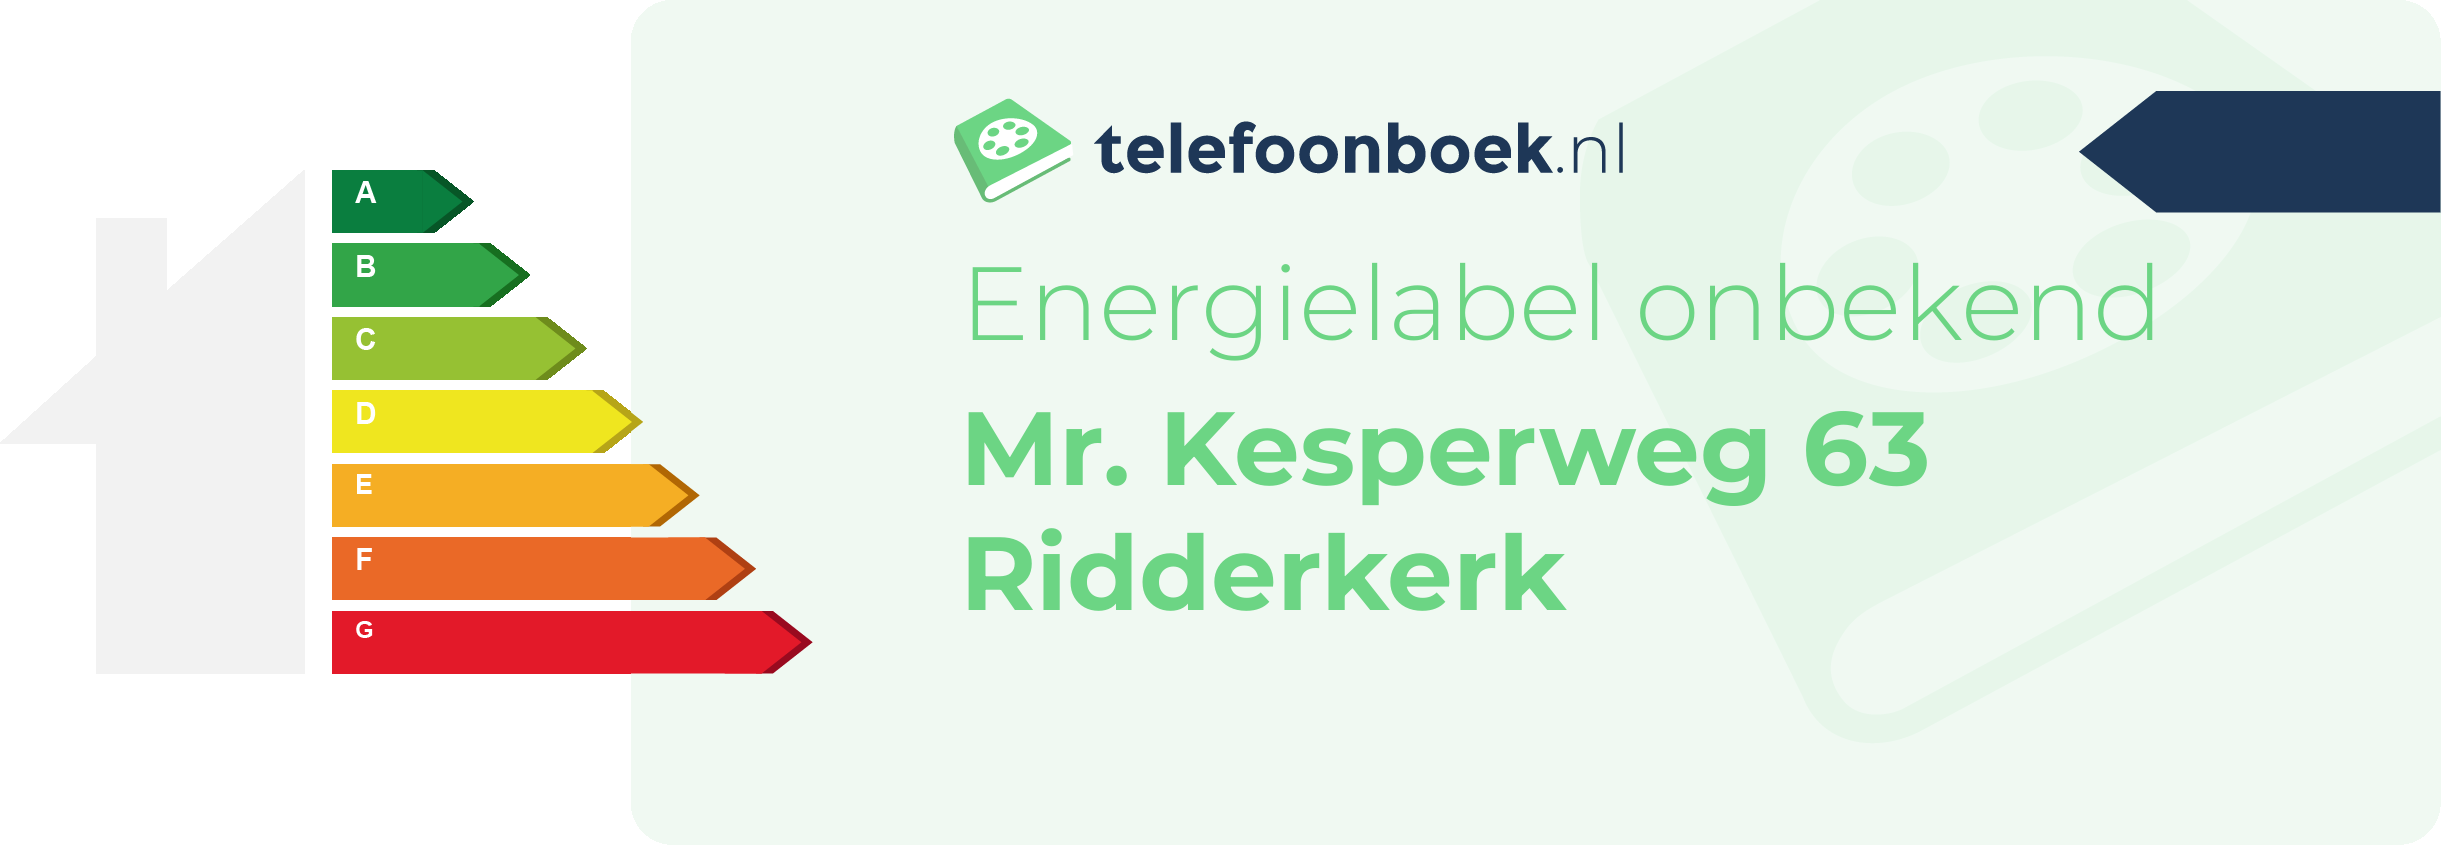 Energielabel Mr. Kesperweg 63 Ridderkerk